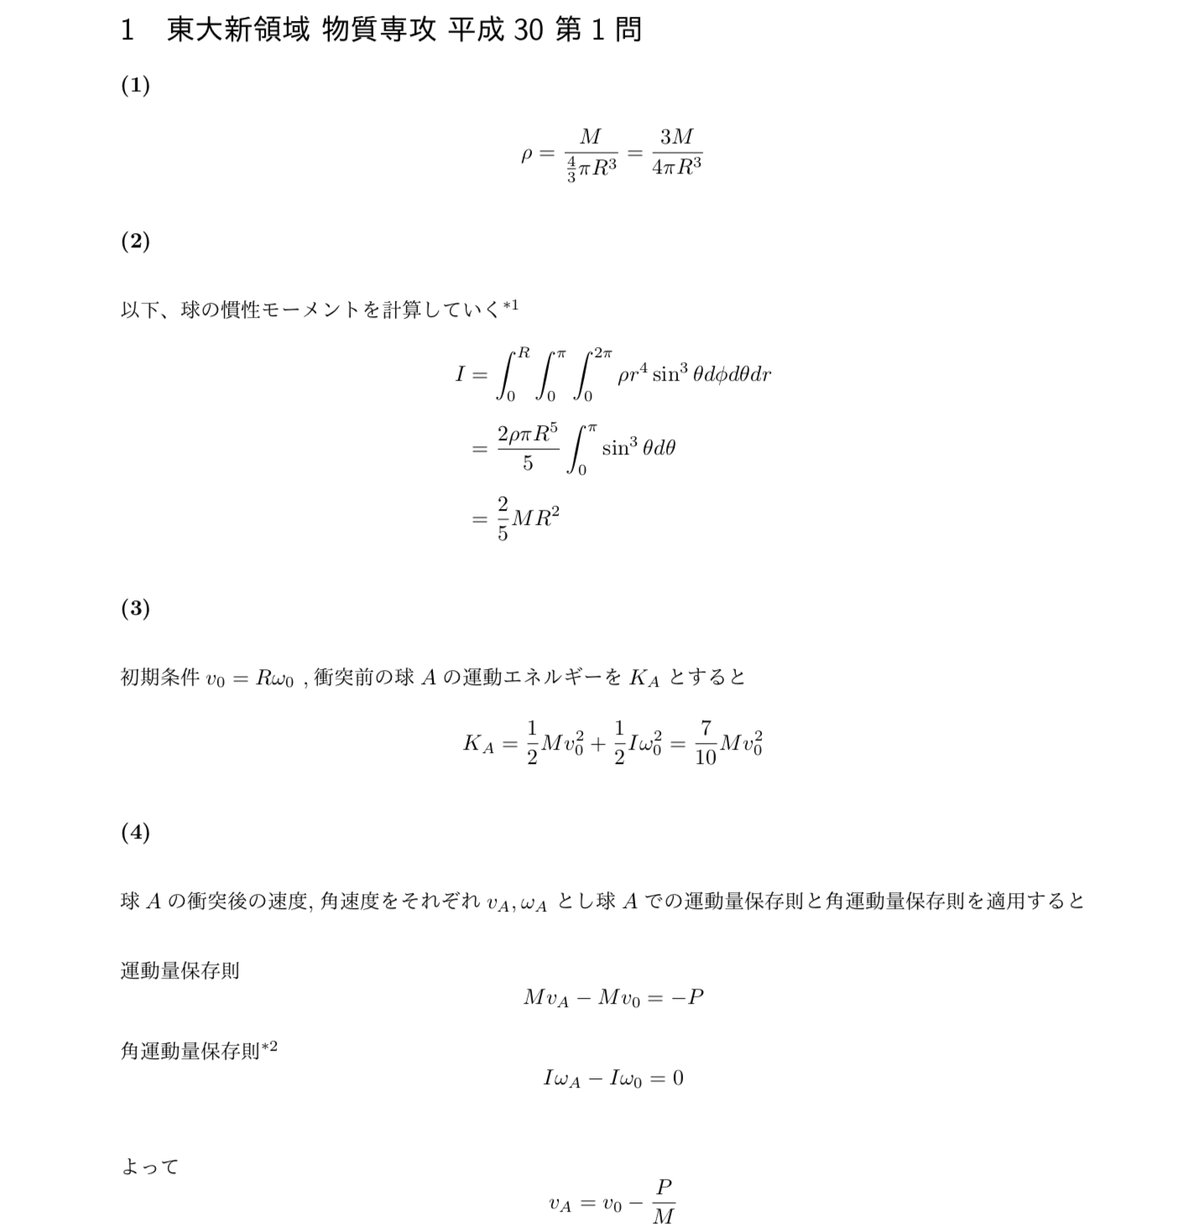 東京大学大学院 工学系 応用化学専攻 院試 過去問 解答例(H22~R2)